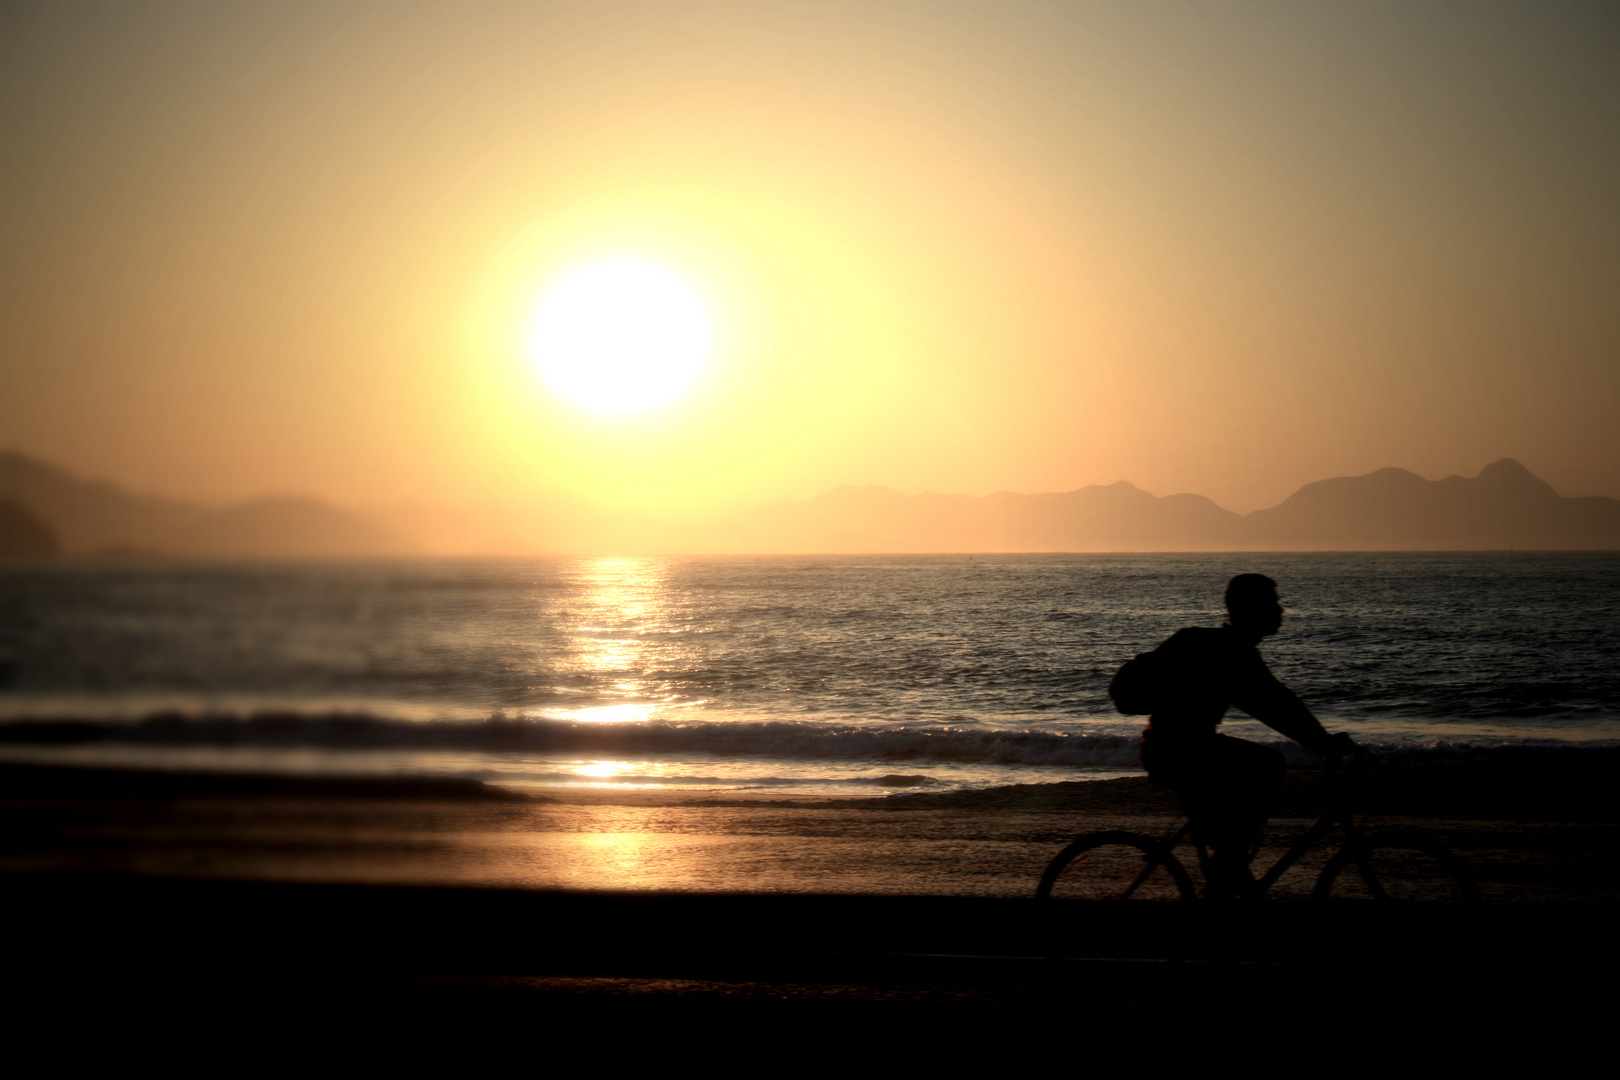 bicycling in Copacabana